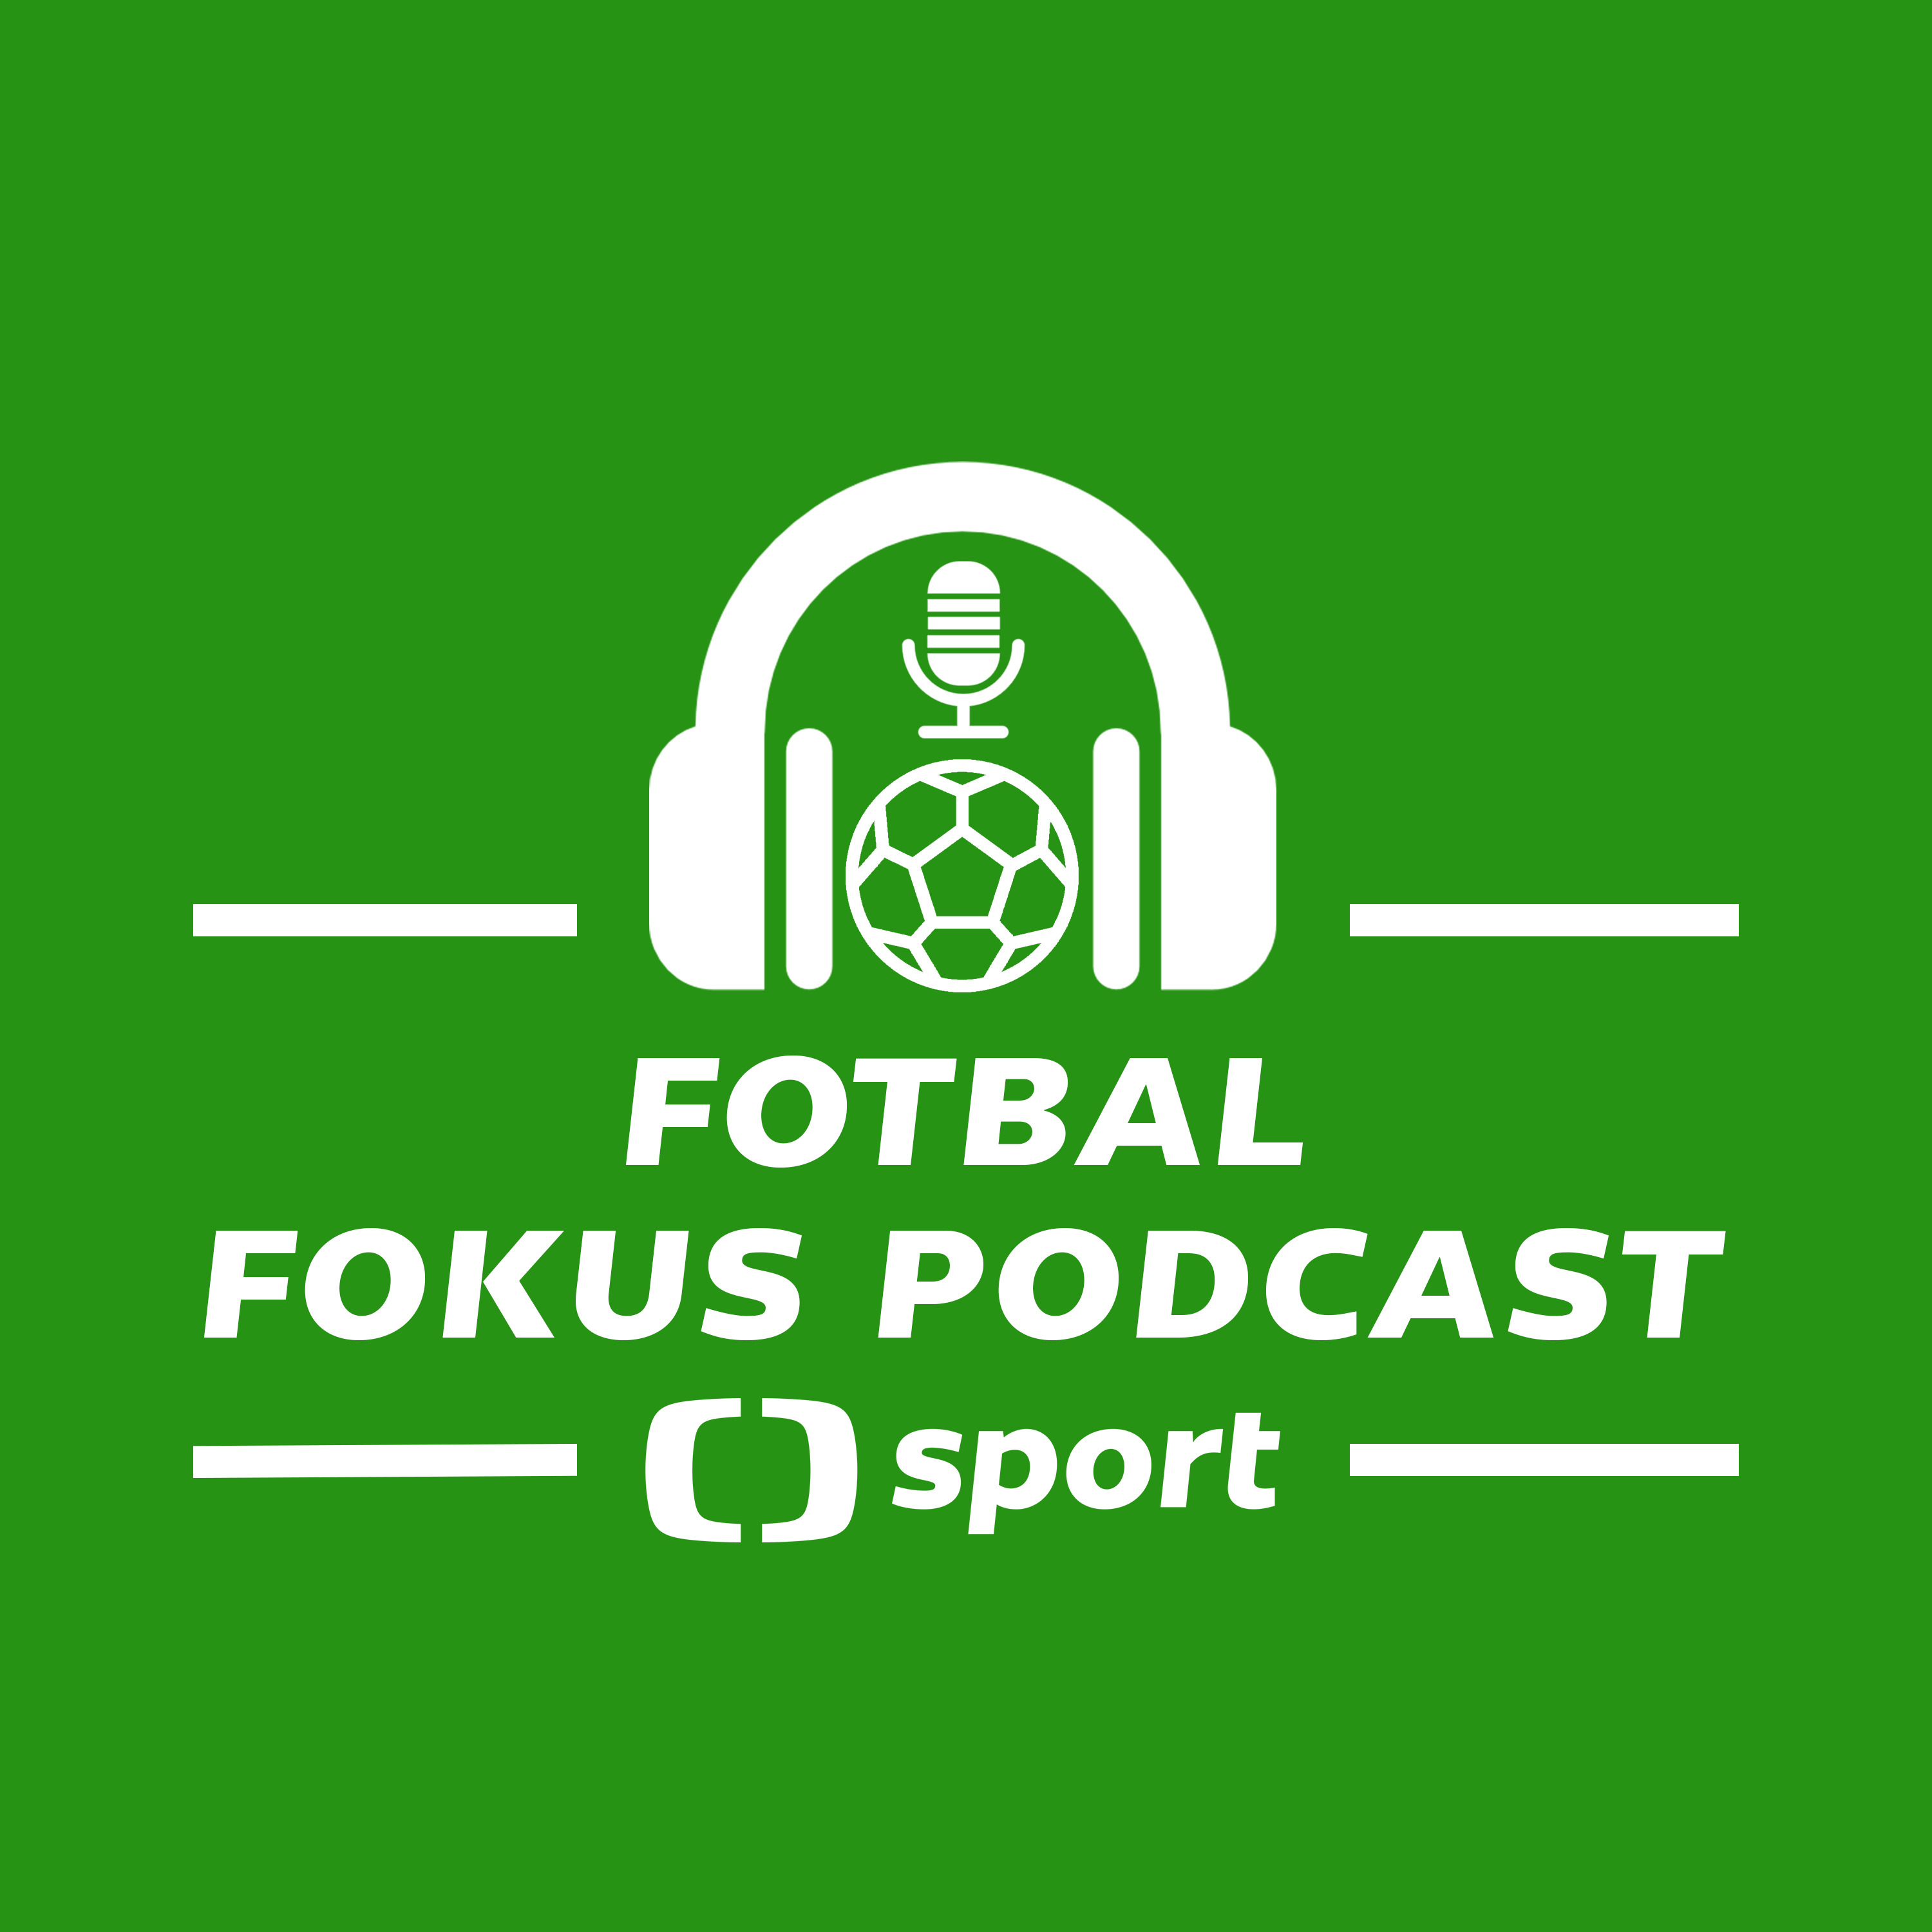 Fotbal fokus podcast: Oznámení u repre za rohem, tahanice o Kováče. Vymstí se Holoubkovi Boleslav?